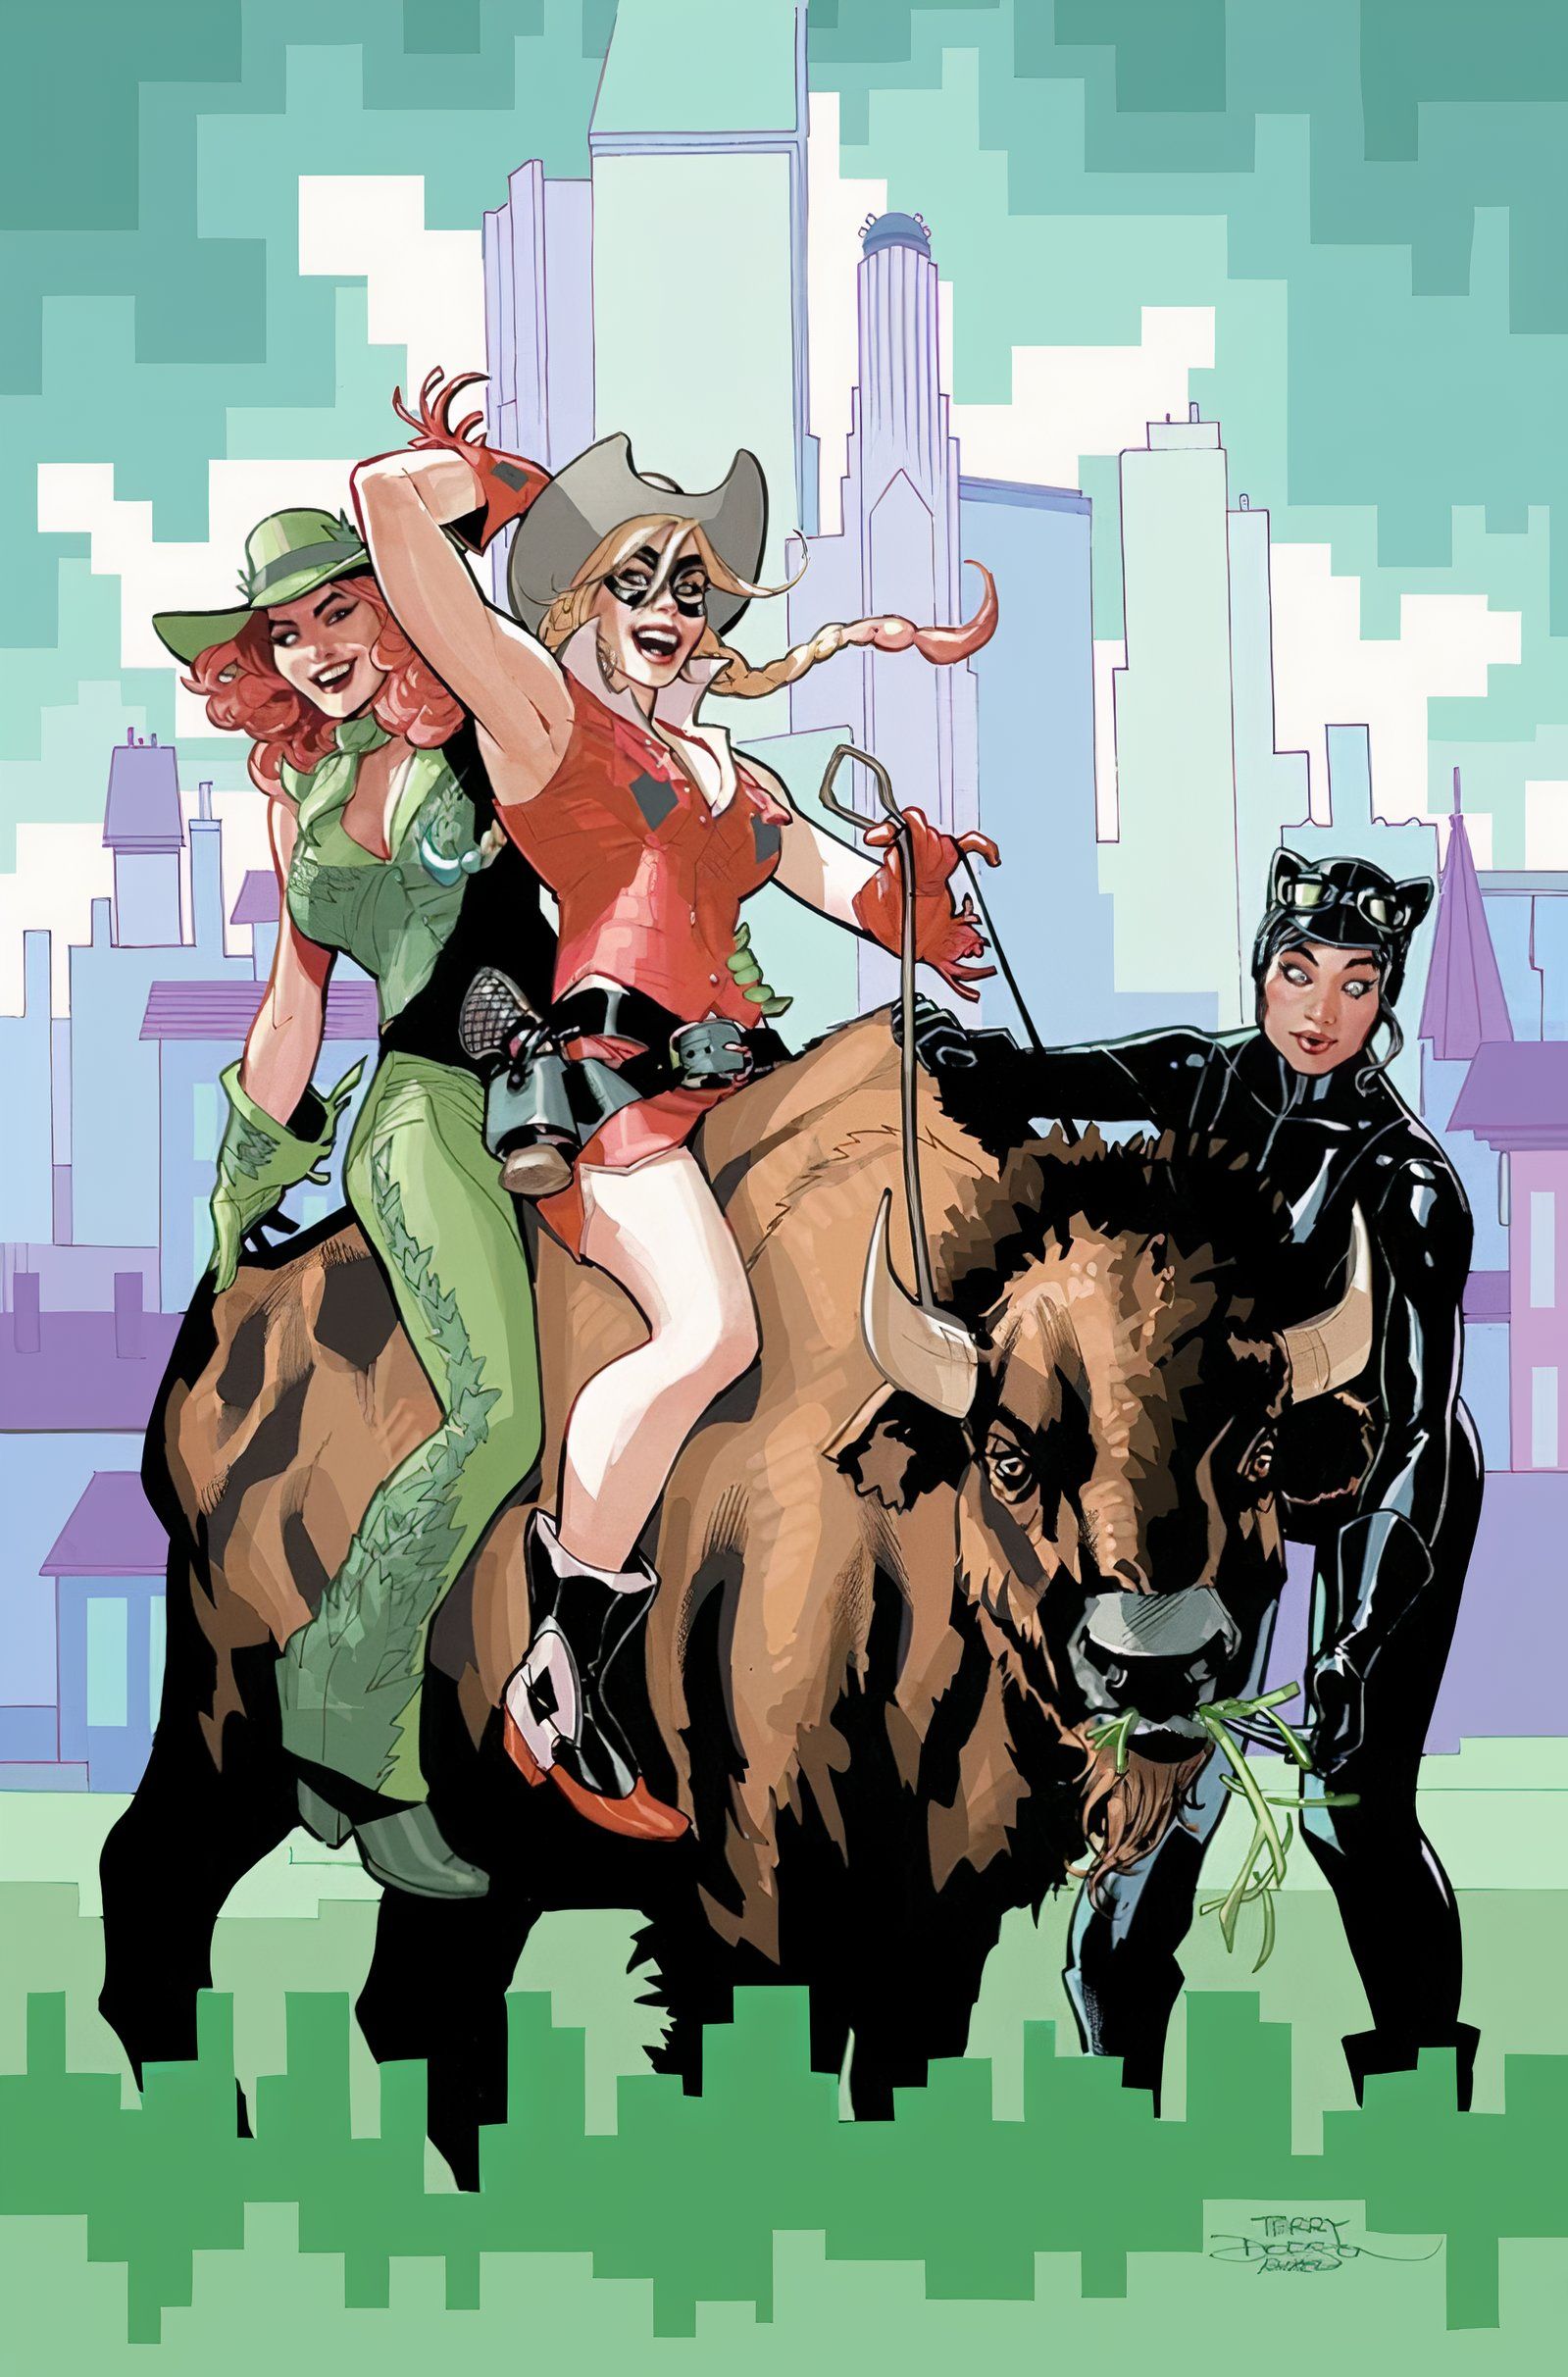 Capa principal de Gotham City Sirens #1, com Hera Venenosa e Arlequina cavalgando um bisão, enquanto a Mulher-Gato as guia.